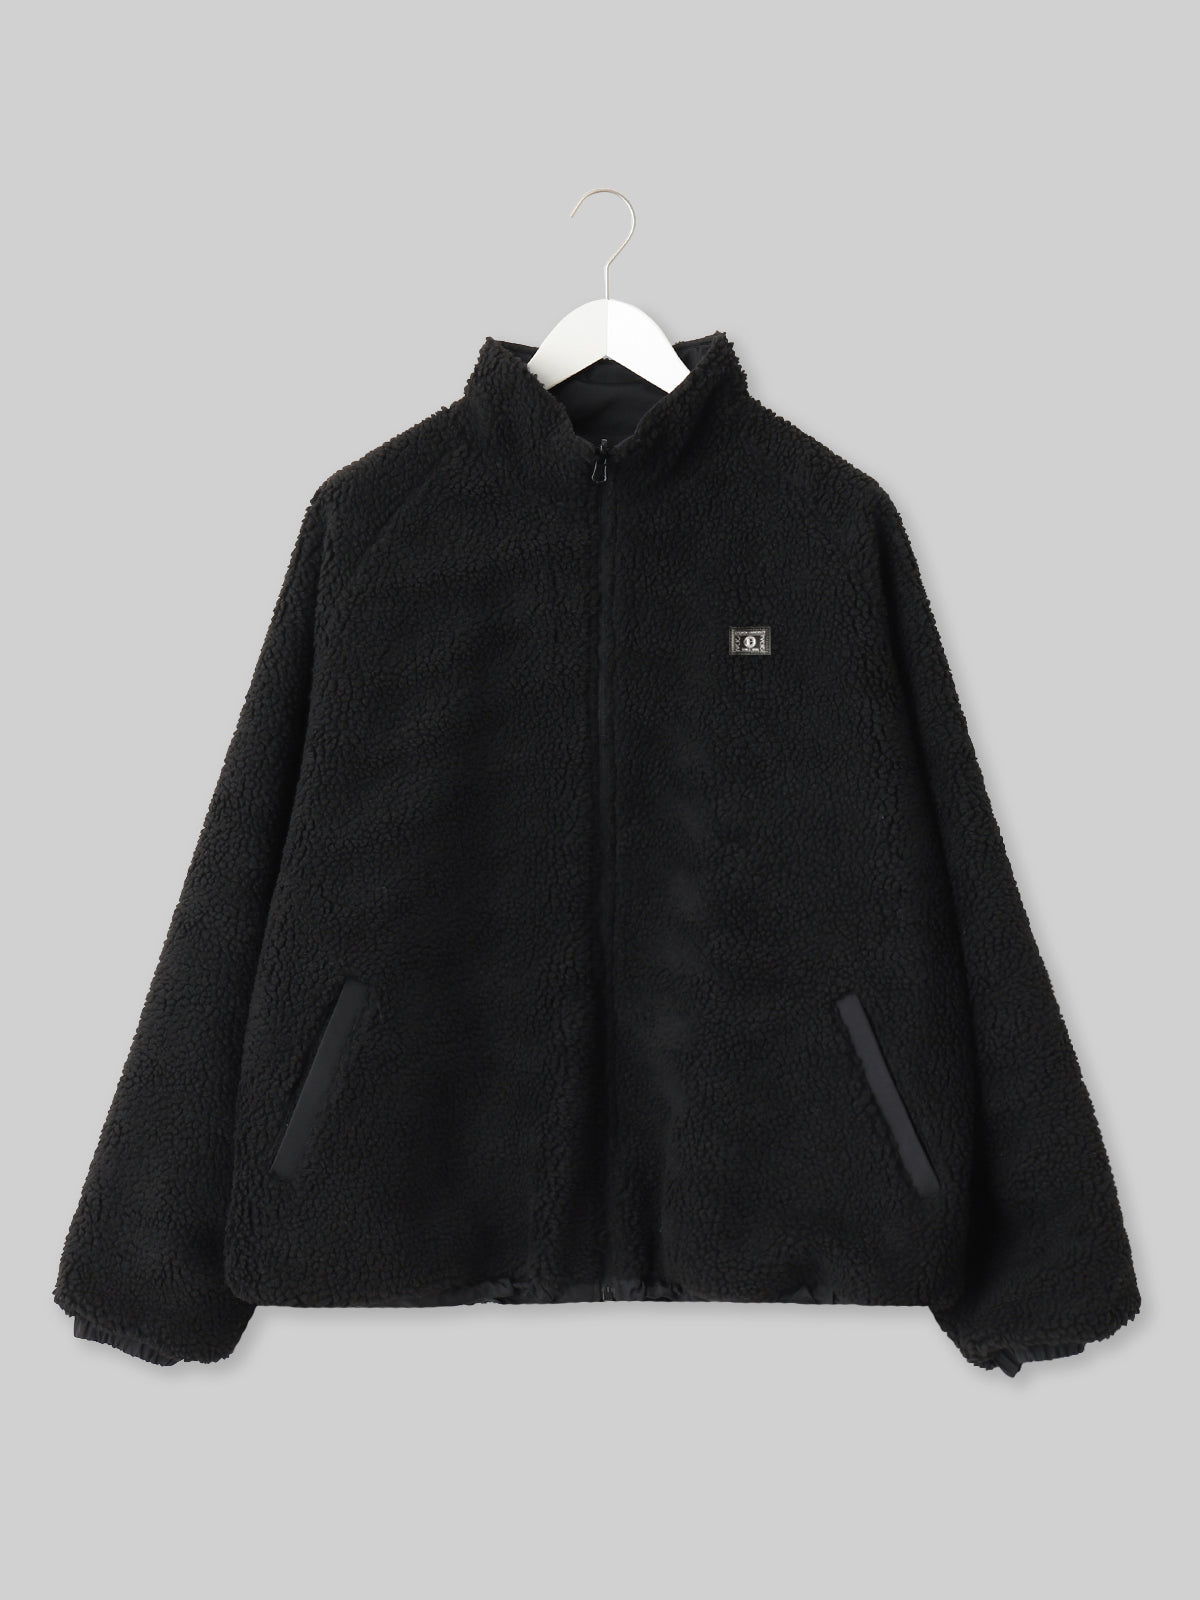 OIDAI リバーシブルボアジャケット サークルロゴ ブラック